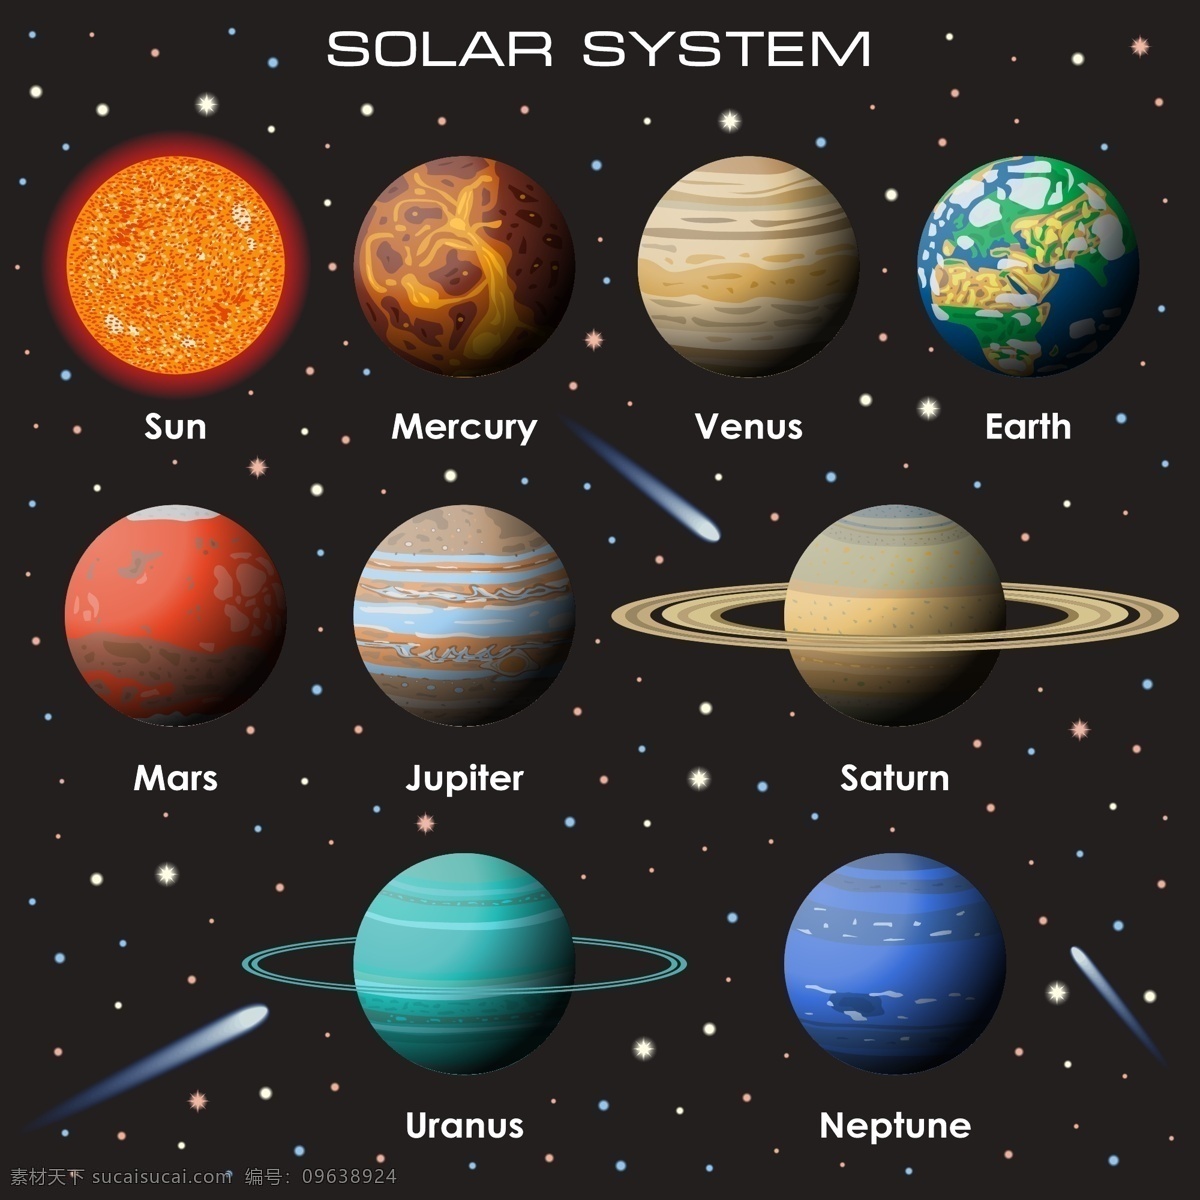 宇宙行星矢量 宇宙 科学 天文 行星 太空 矢量 卡通设计